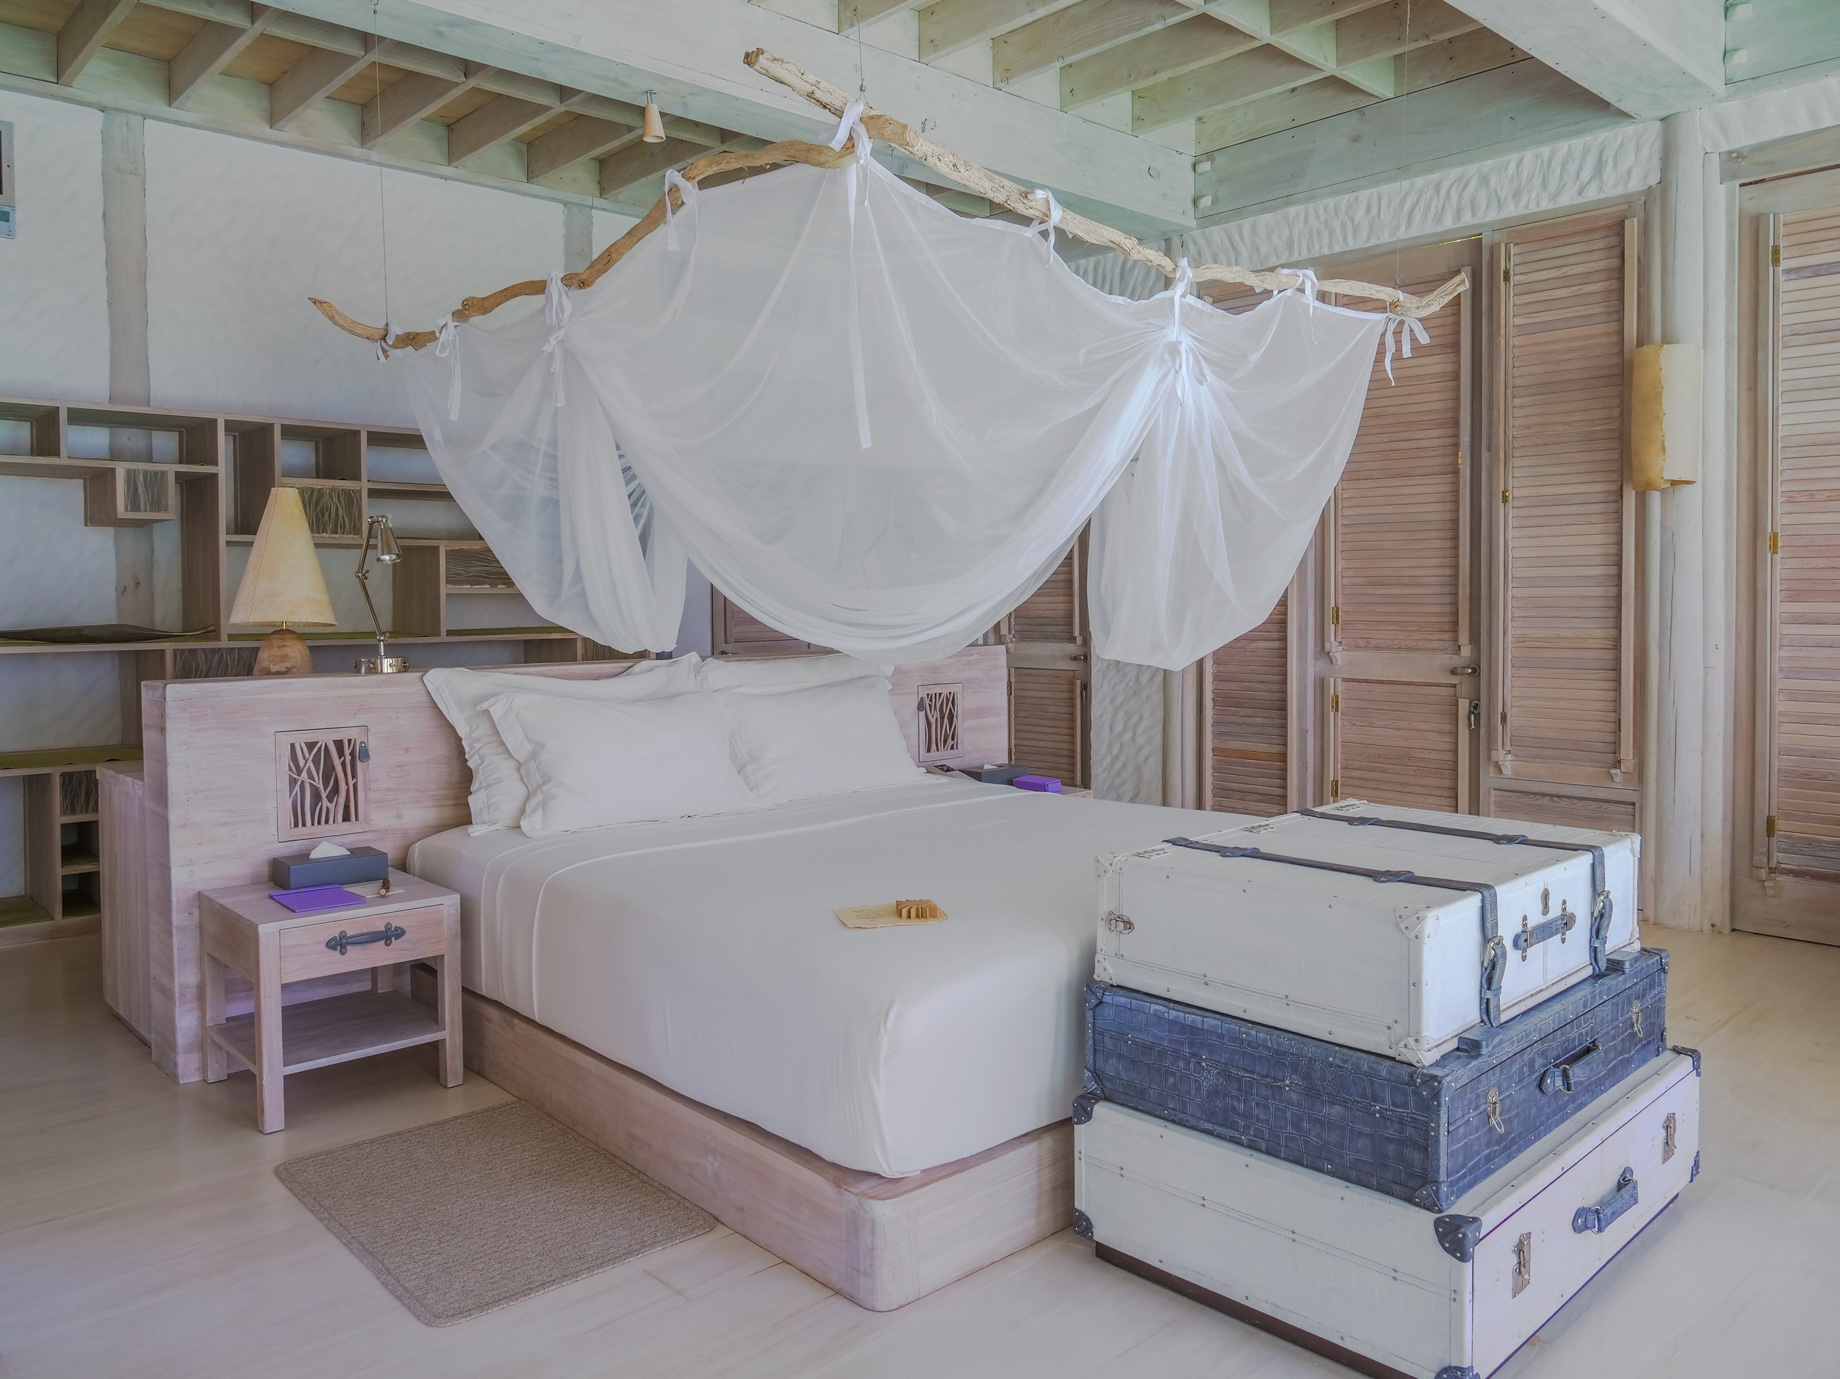 Soneva Jani Resort – Noonu Atoll, Medhufaru, Maldives – 4 Bedroom Island Reserve Villa Bedroom